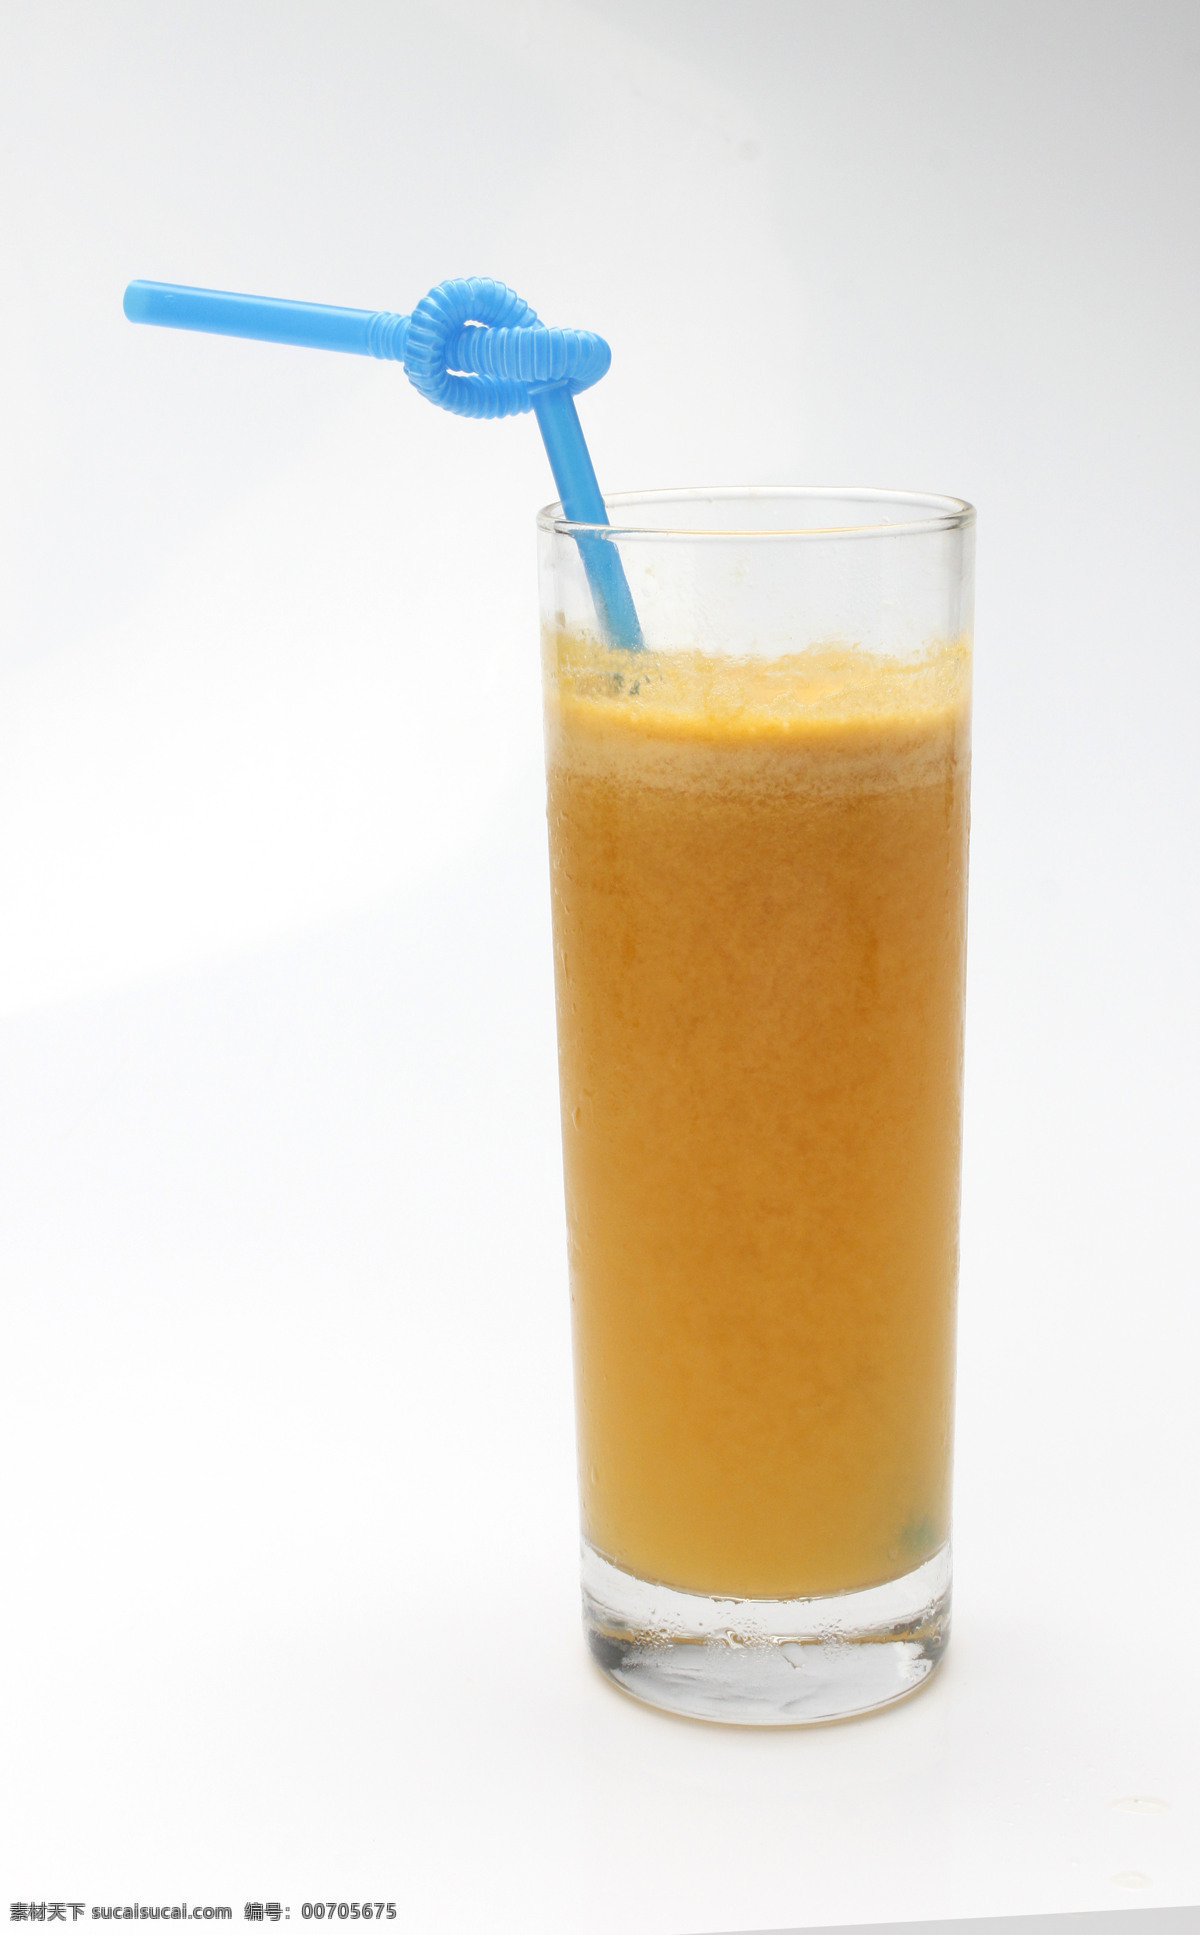 橙汁 果汁 芒果汁 冷饮 玻璃杯 鲜榨果汁 现榨果汁 饮料 餐饮美食 饮料酒水